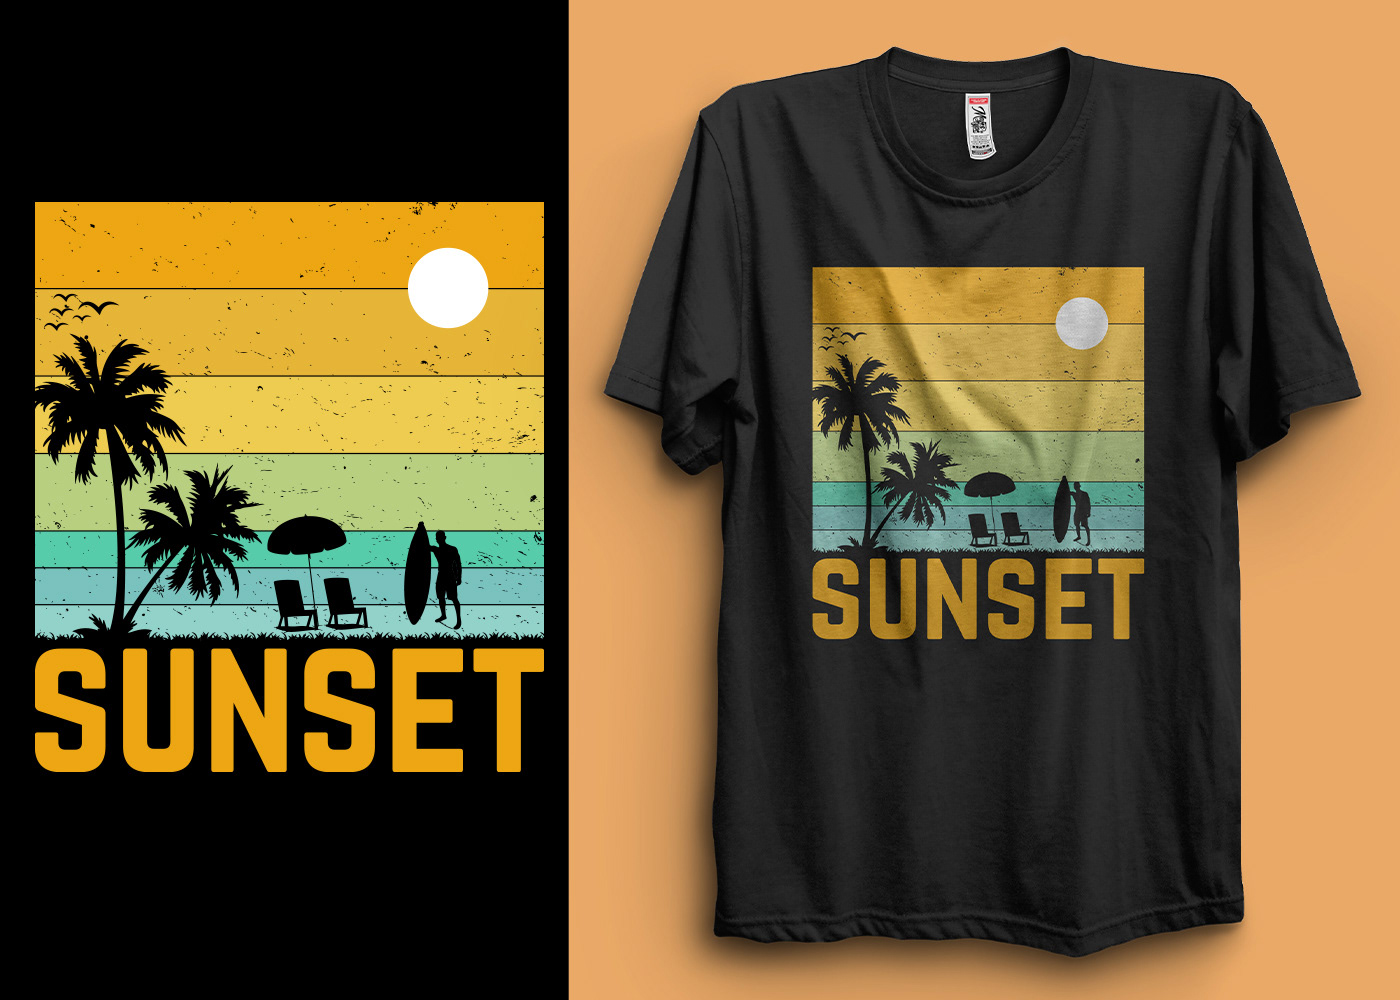 t-shirt T-Shirt Design tshirt Tshirt Design Tshirt design ideas sunset Summer T-shirt design vintage t-shirt retro t-shirt Sunset T-Shirt Design